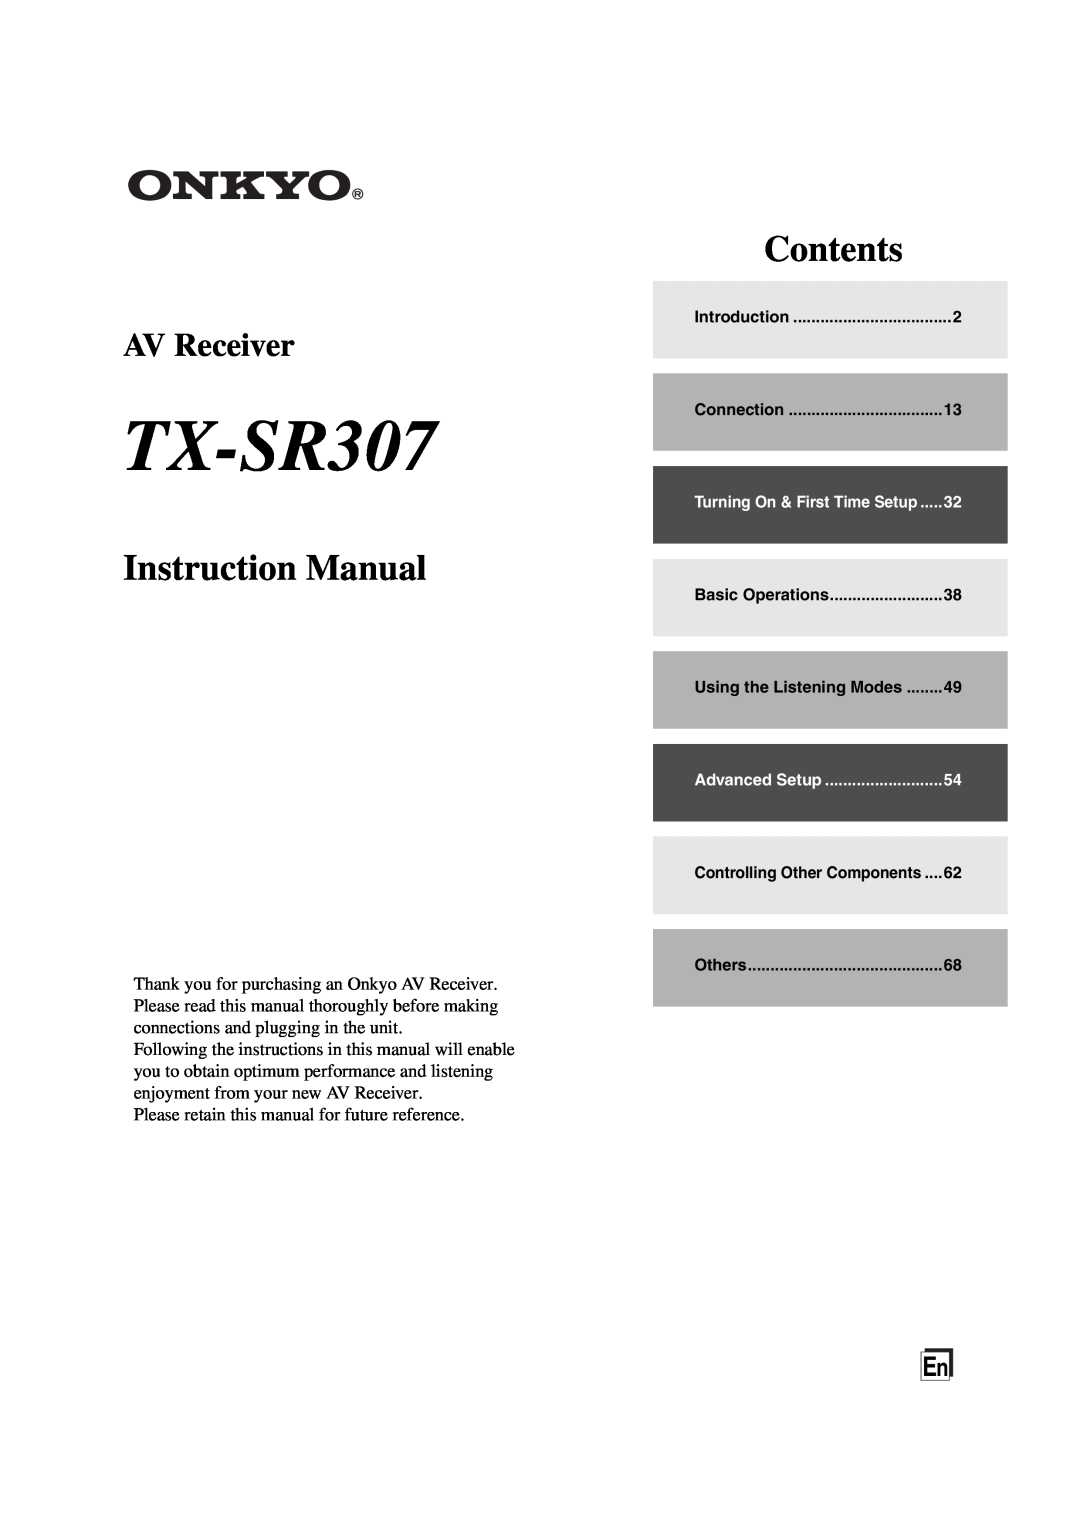 Onkyo TXSR307 instruction manual TX-SR307, Contents, AV Receiver 